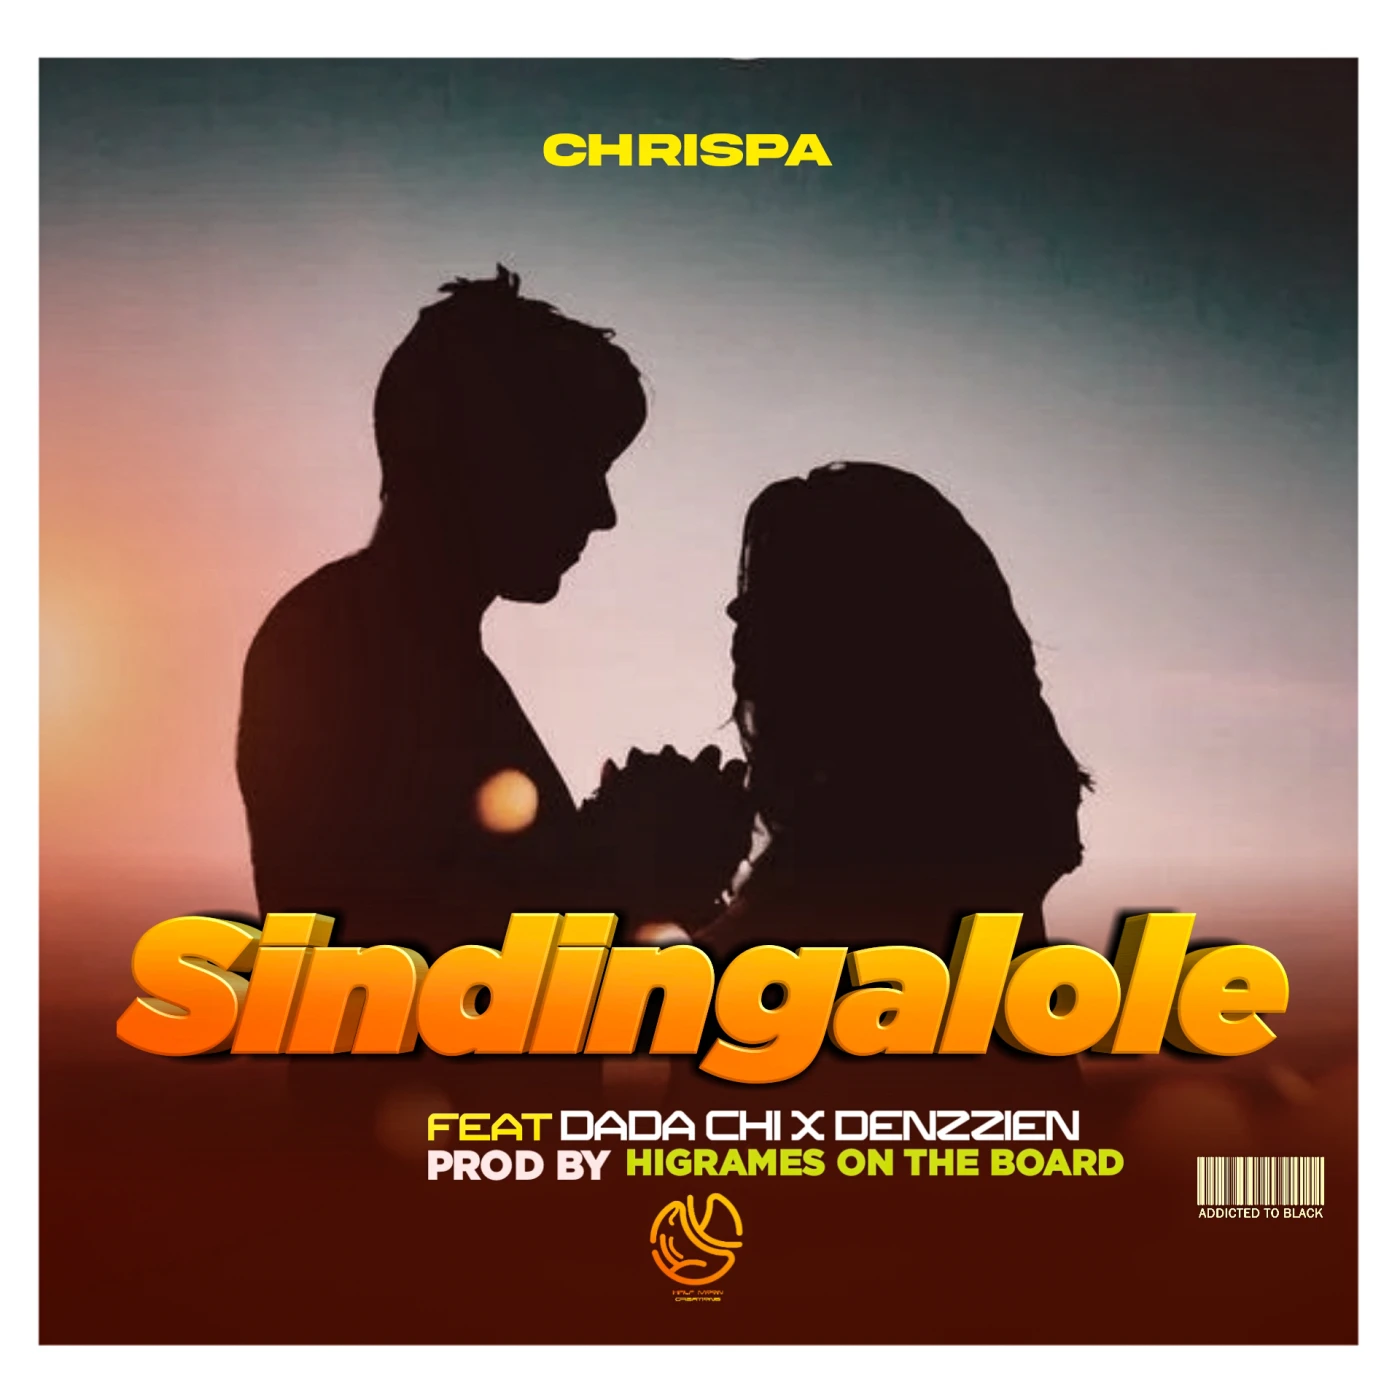 sindingalore-chrispa-ft-dada-chi-x-denzzien-chrispa-Just Malawi Music